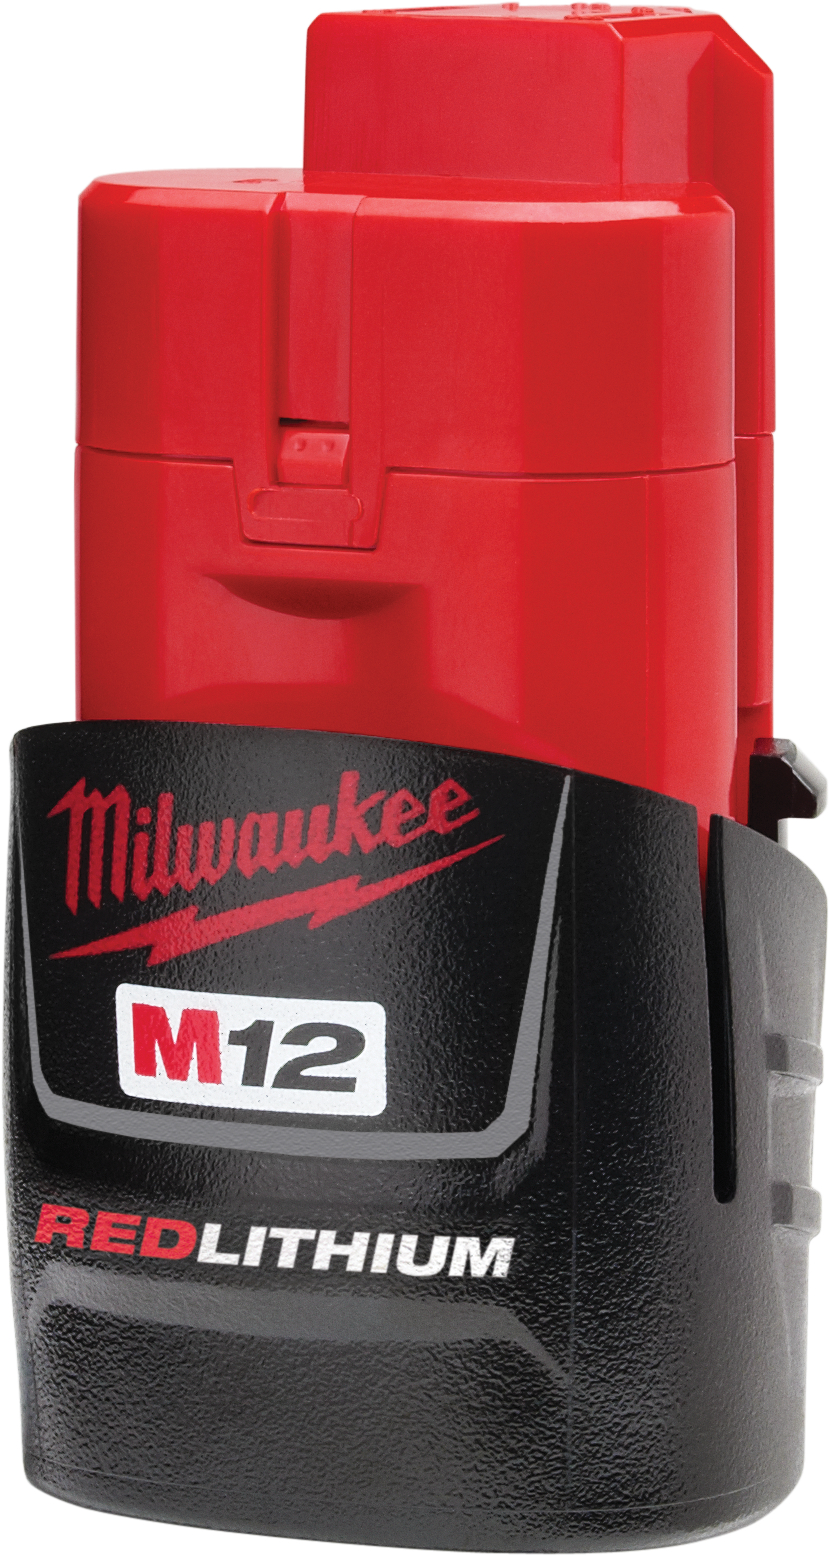 48112401 - M12 Redlithium CP1.5 Battery Pack - Milwaukee®